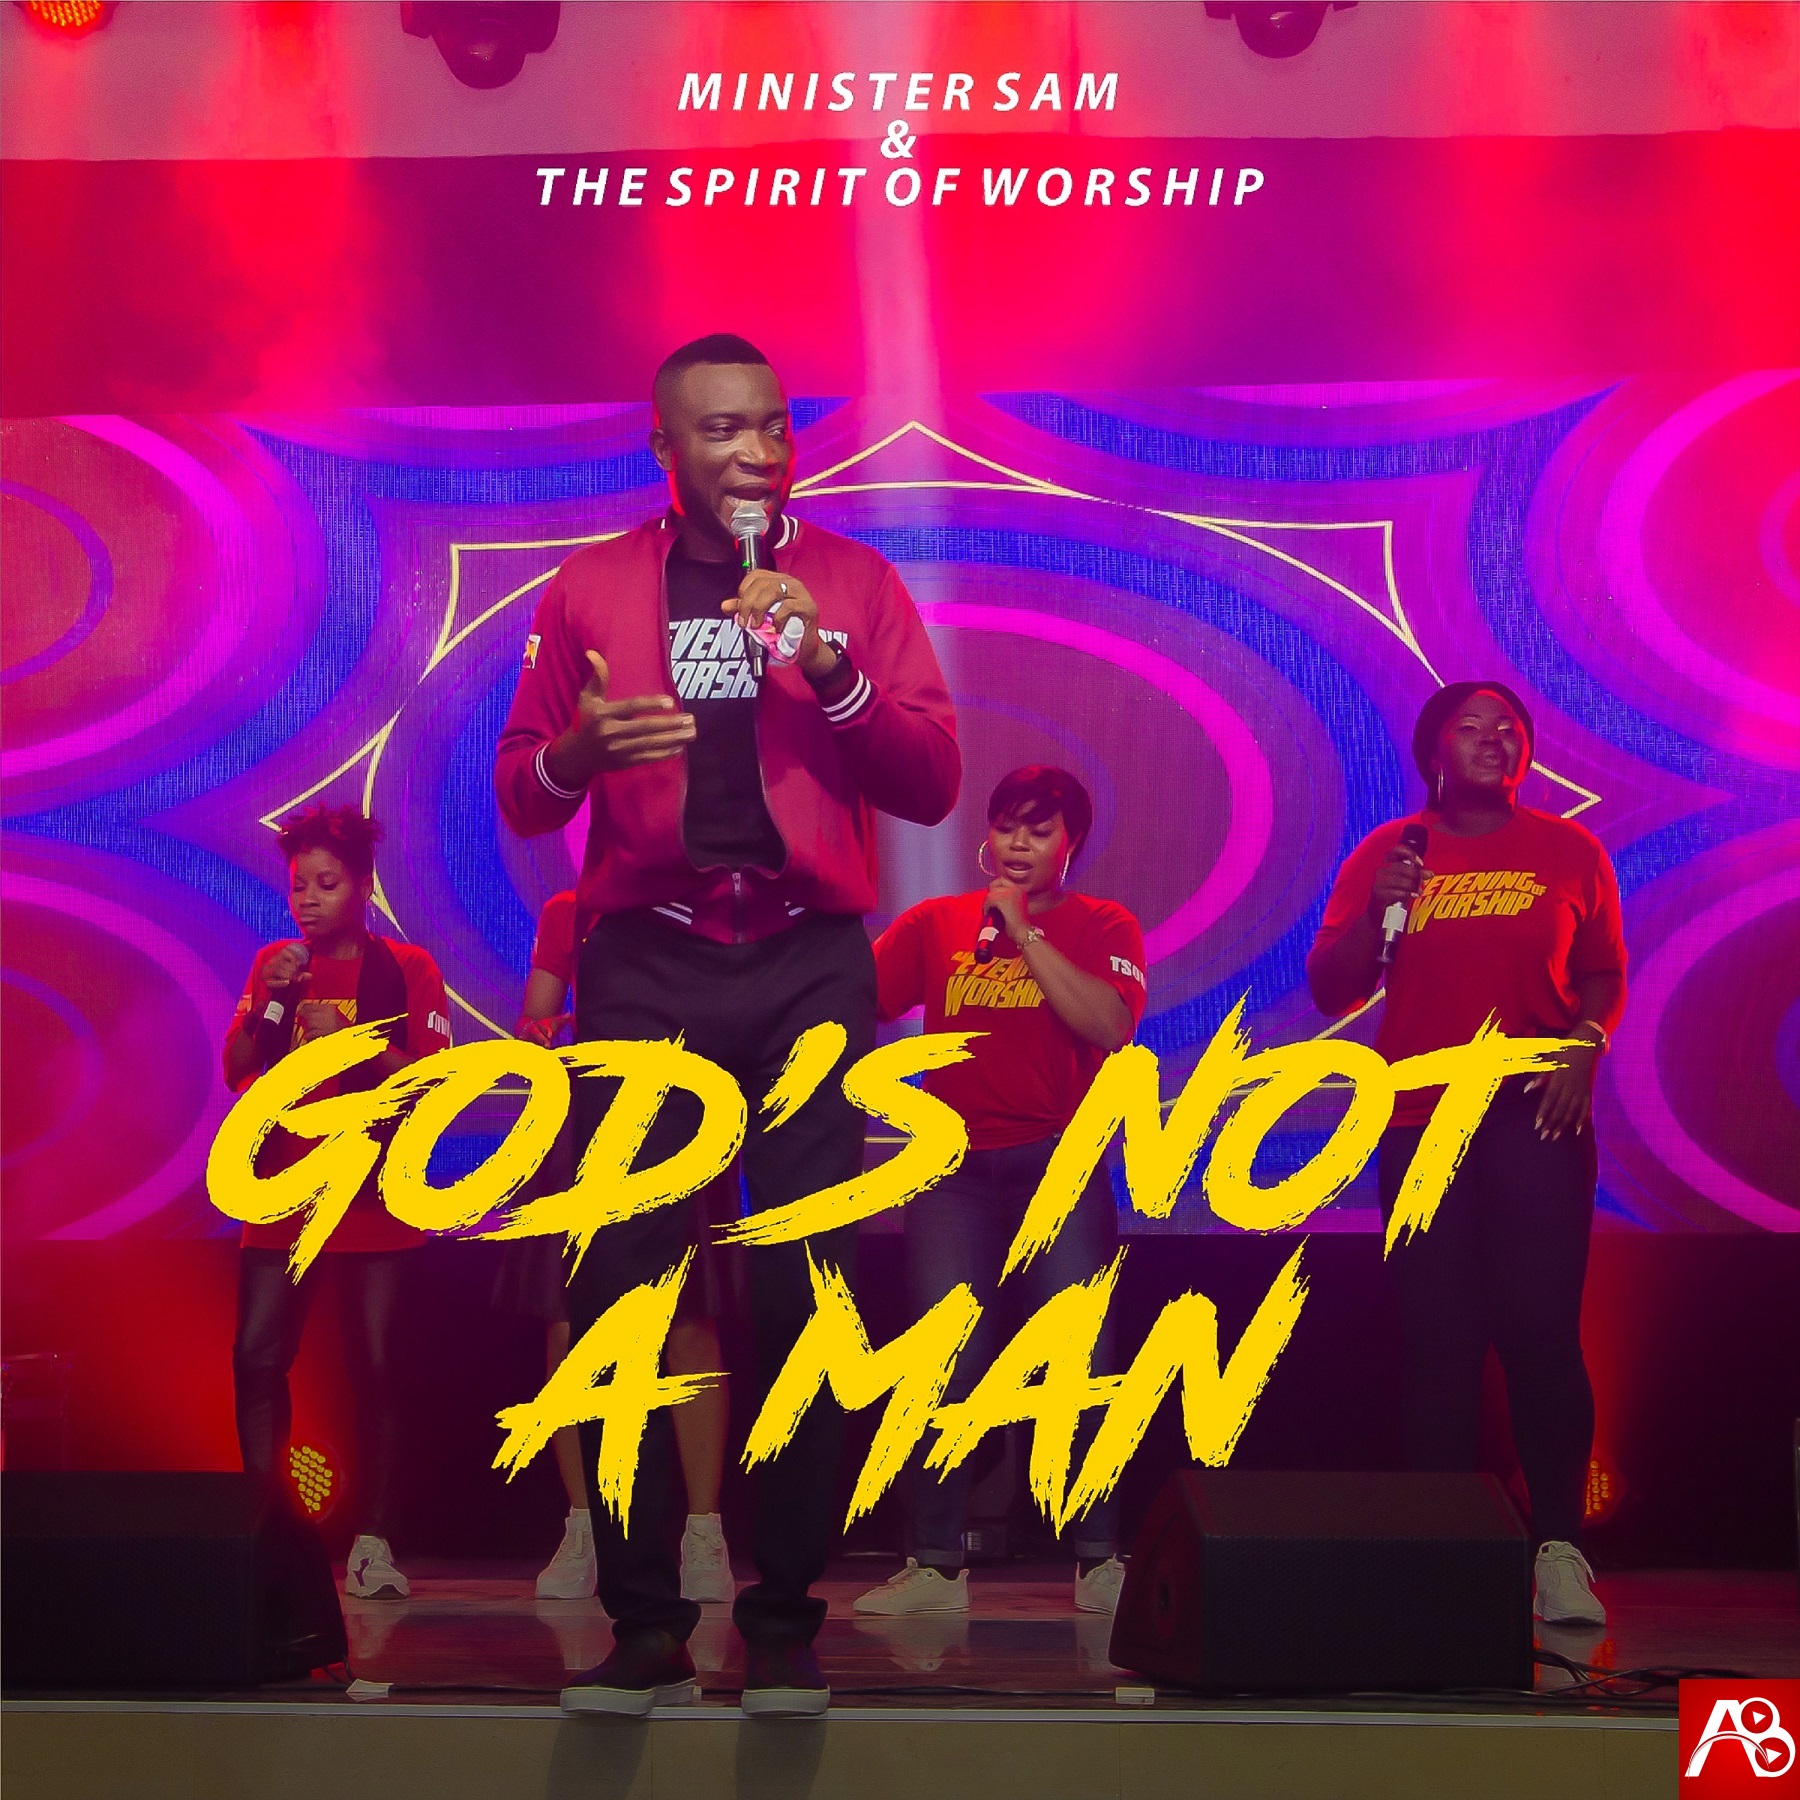 Minister Sam God's Not A Man